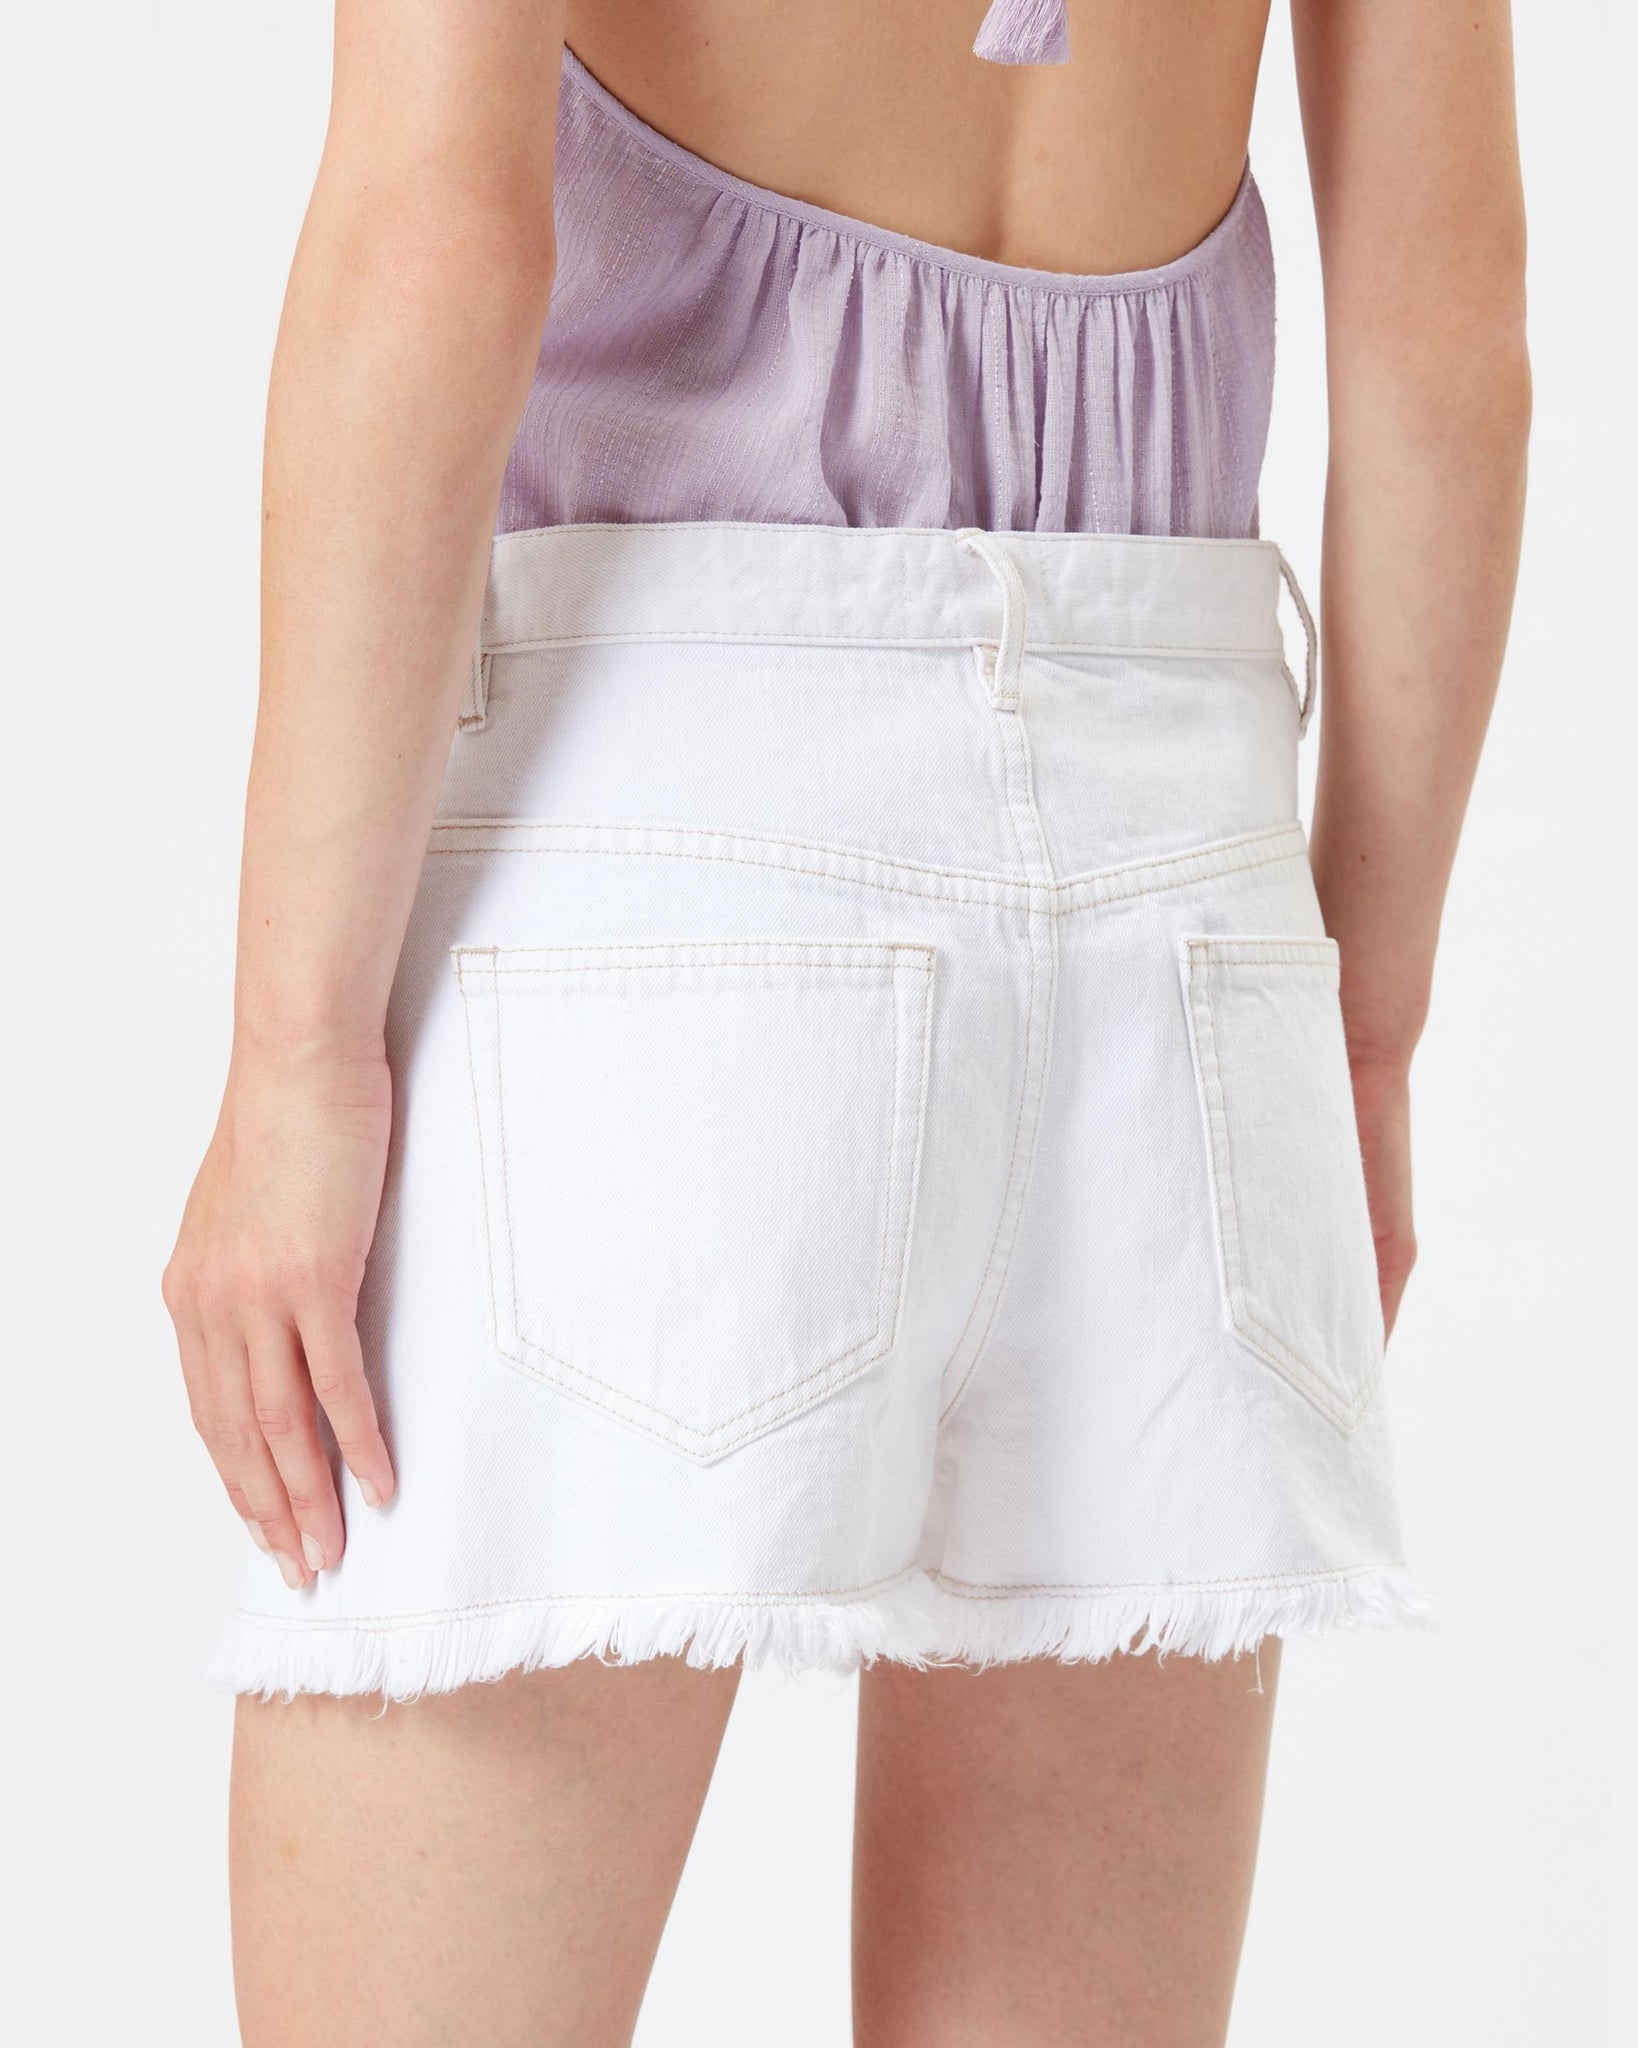 Lesia shorts, white